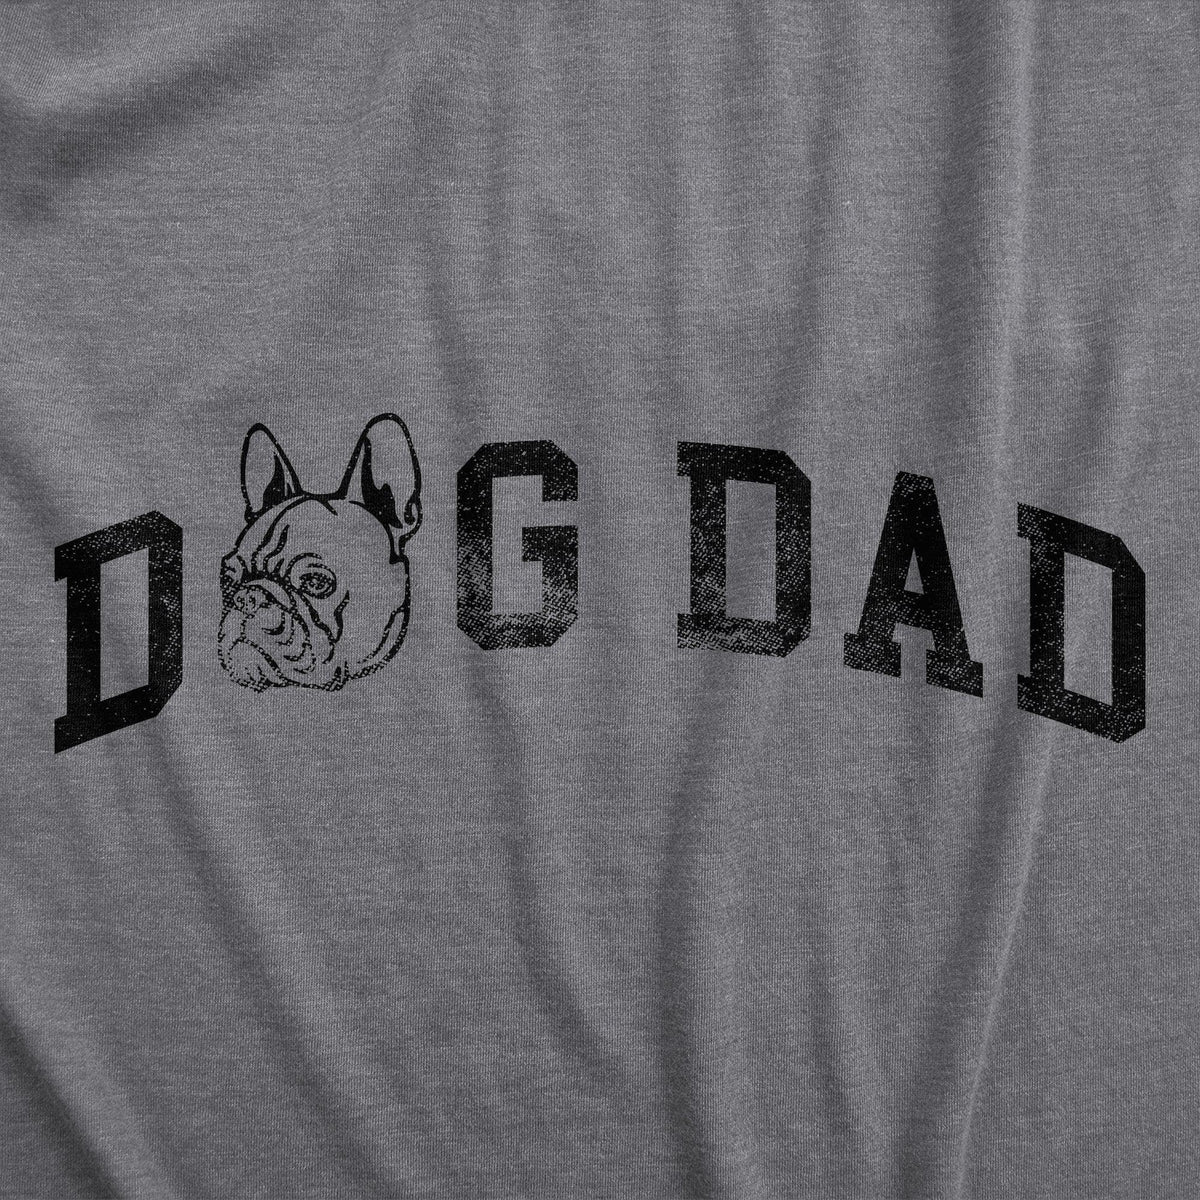 Dog Dad French Bulldog Men&#39;s Tshirt  -  Crazy Dog T-Shirts